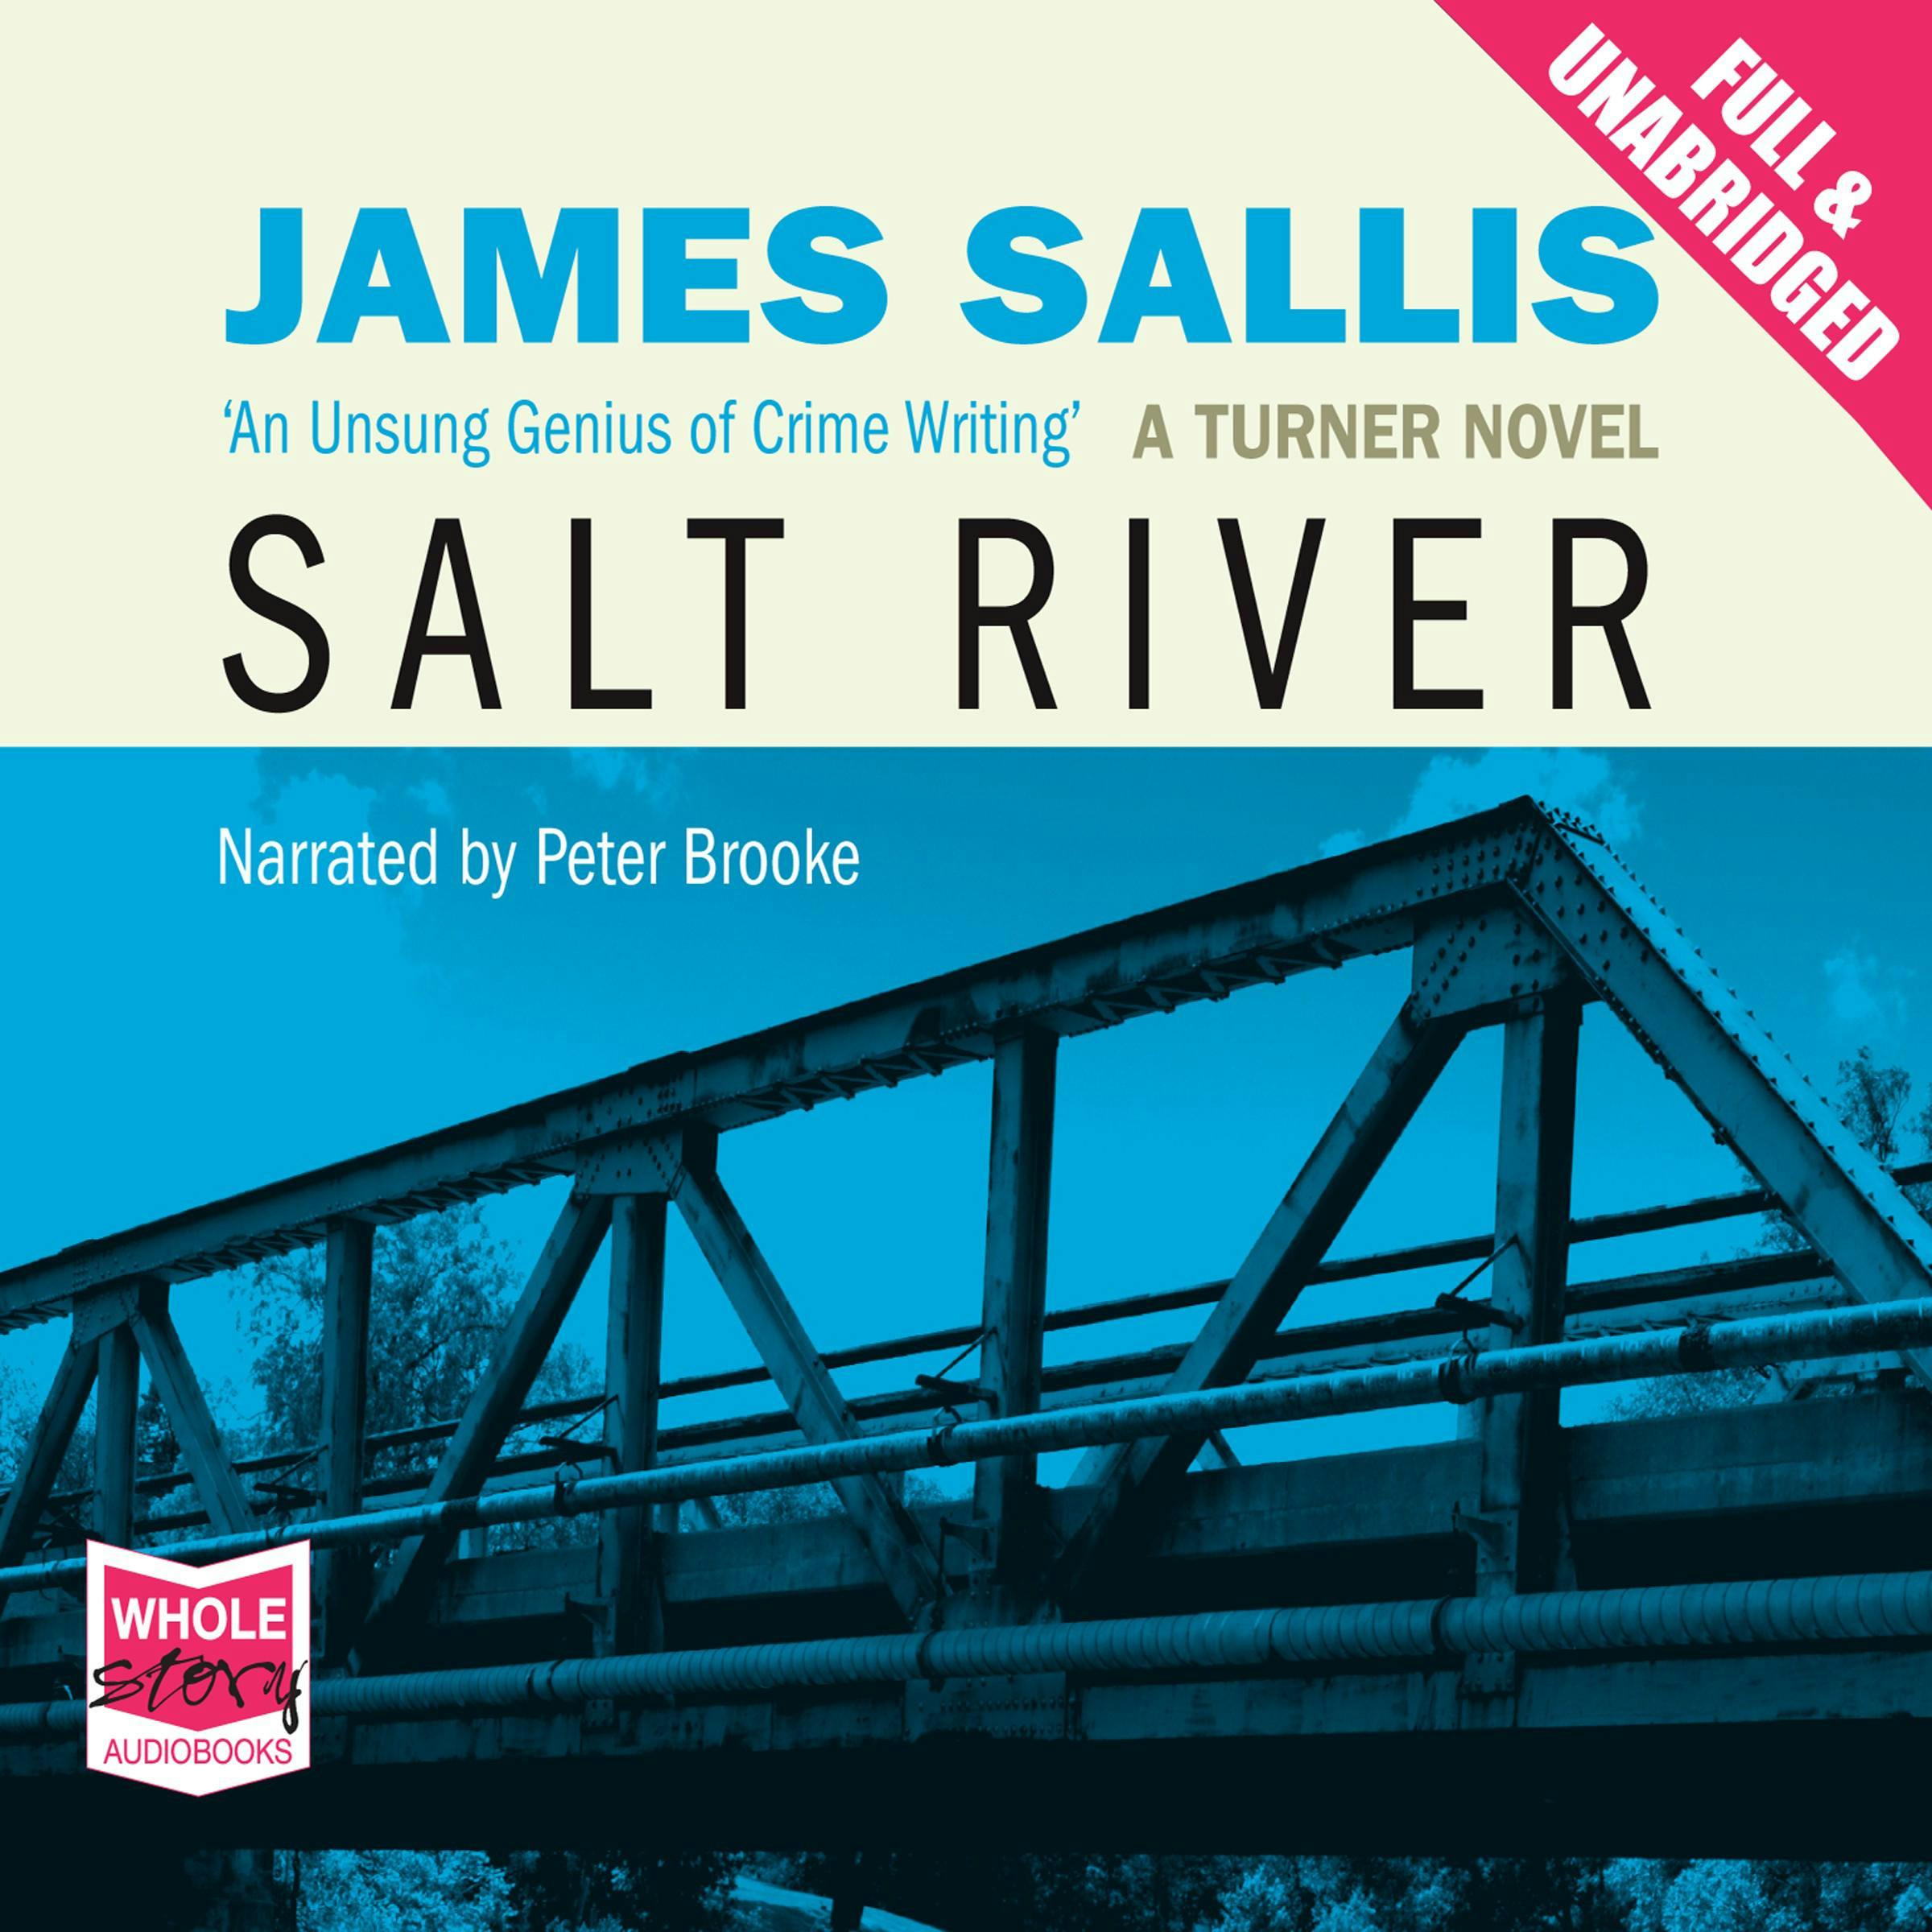 Salt River - James Sallis